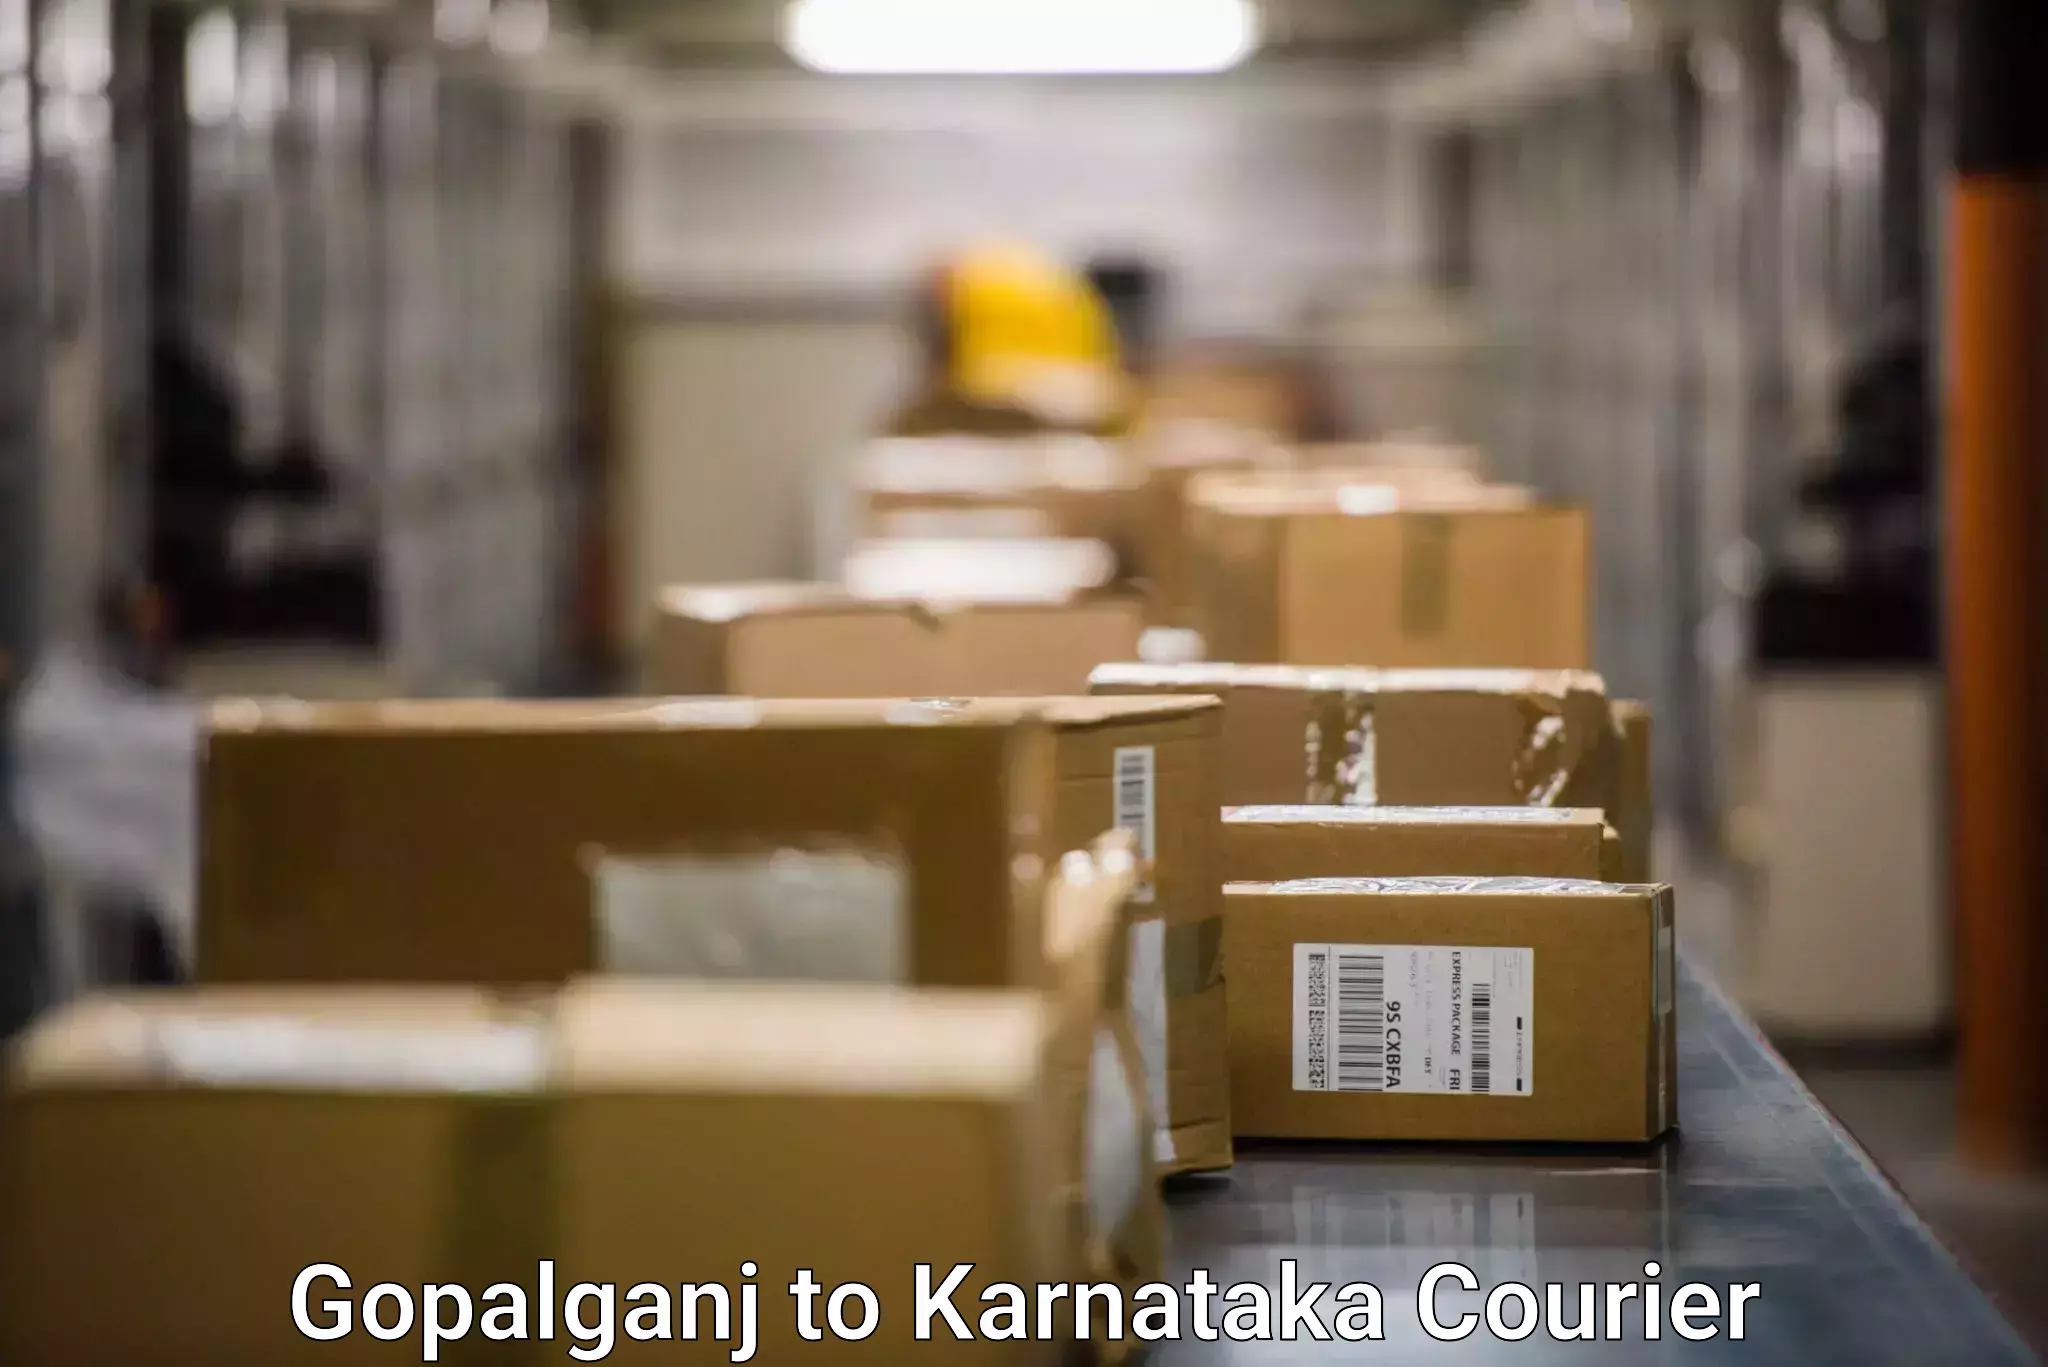 Scalable shipping solutions Gopalganj to Yenepoya Mangalore